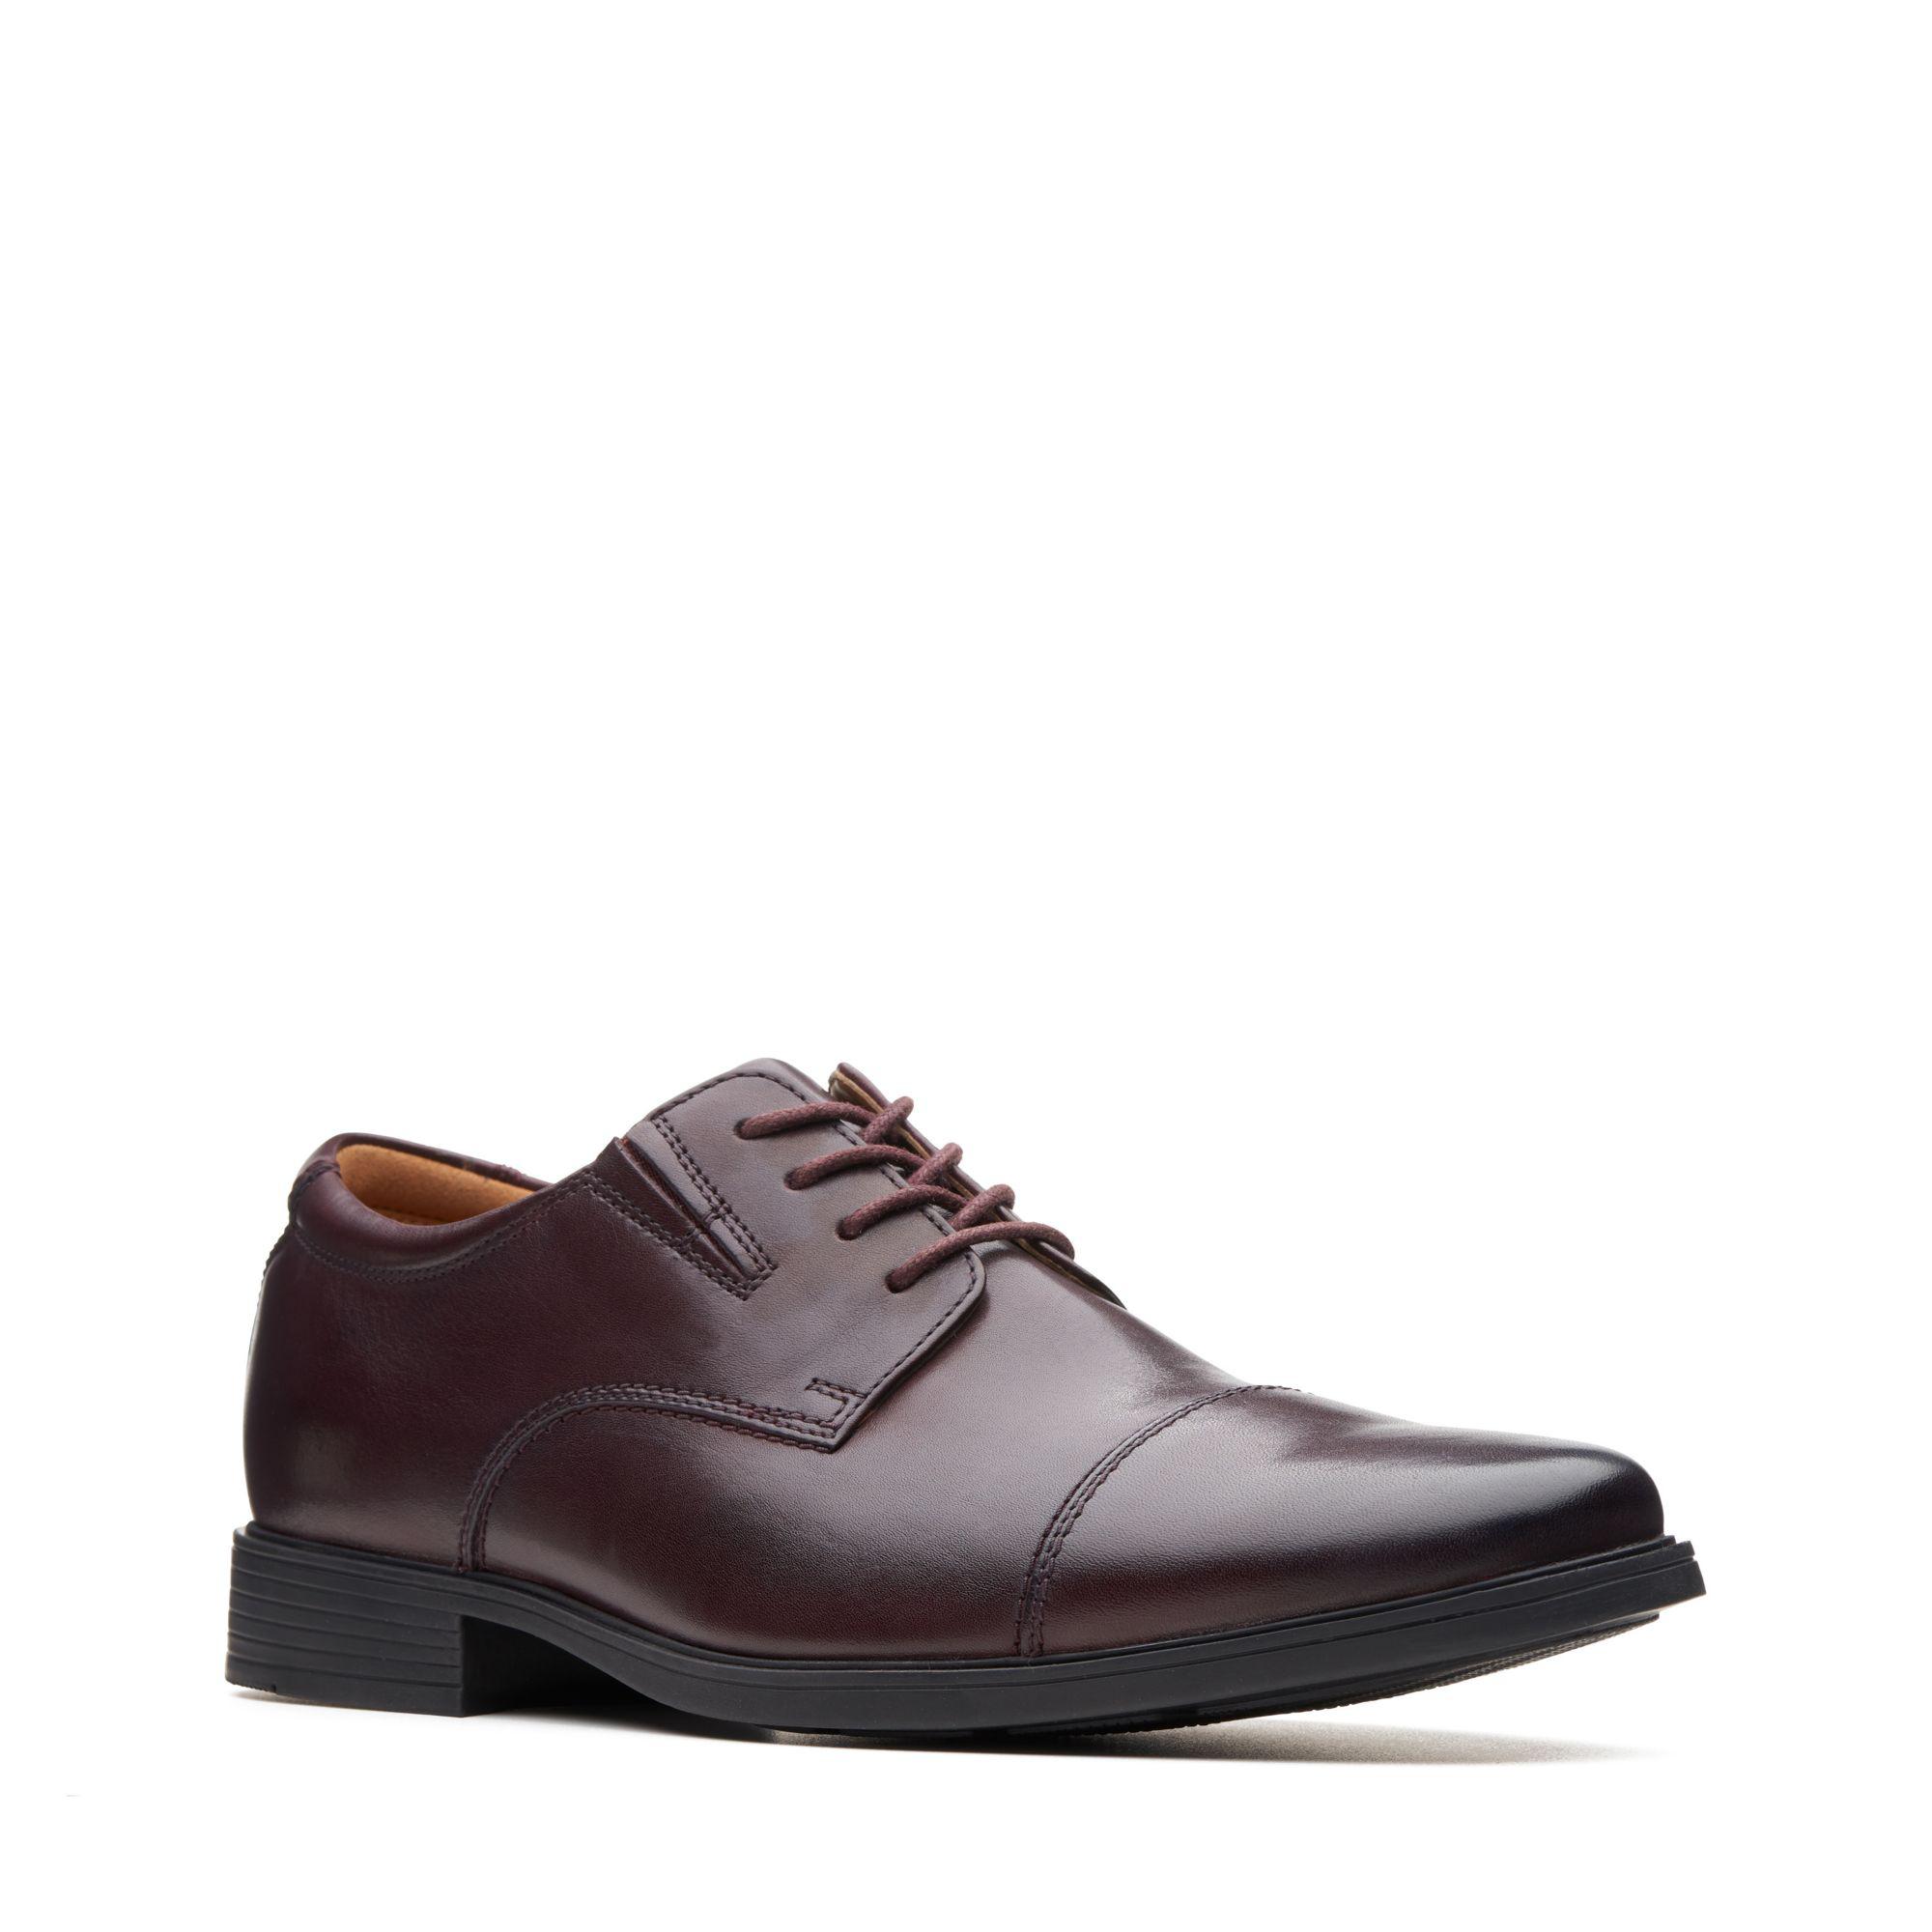 Clarks Mens Tilden Walk Oxford Shoes Brown Leather UK Size 8 G 